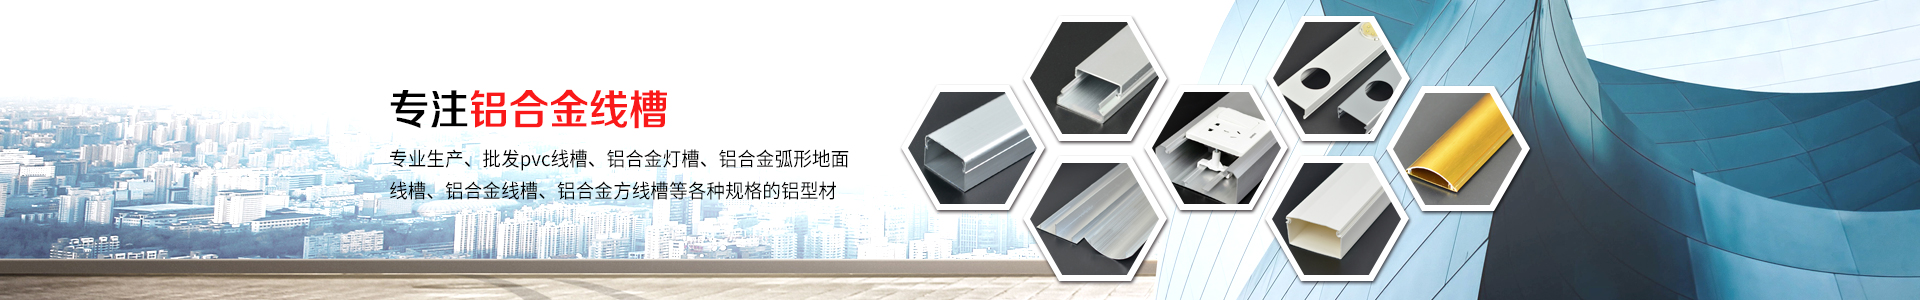 120×50PVC面板线槽直接-江阴市鸣诚铝业有限公司